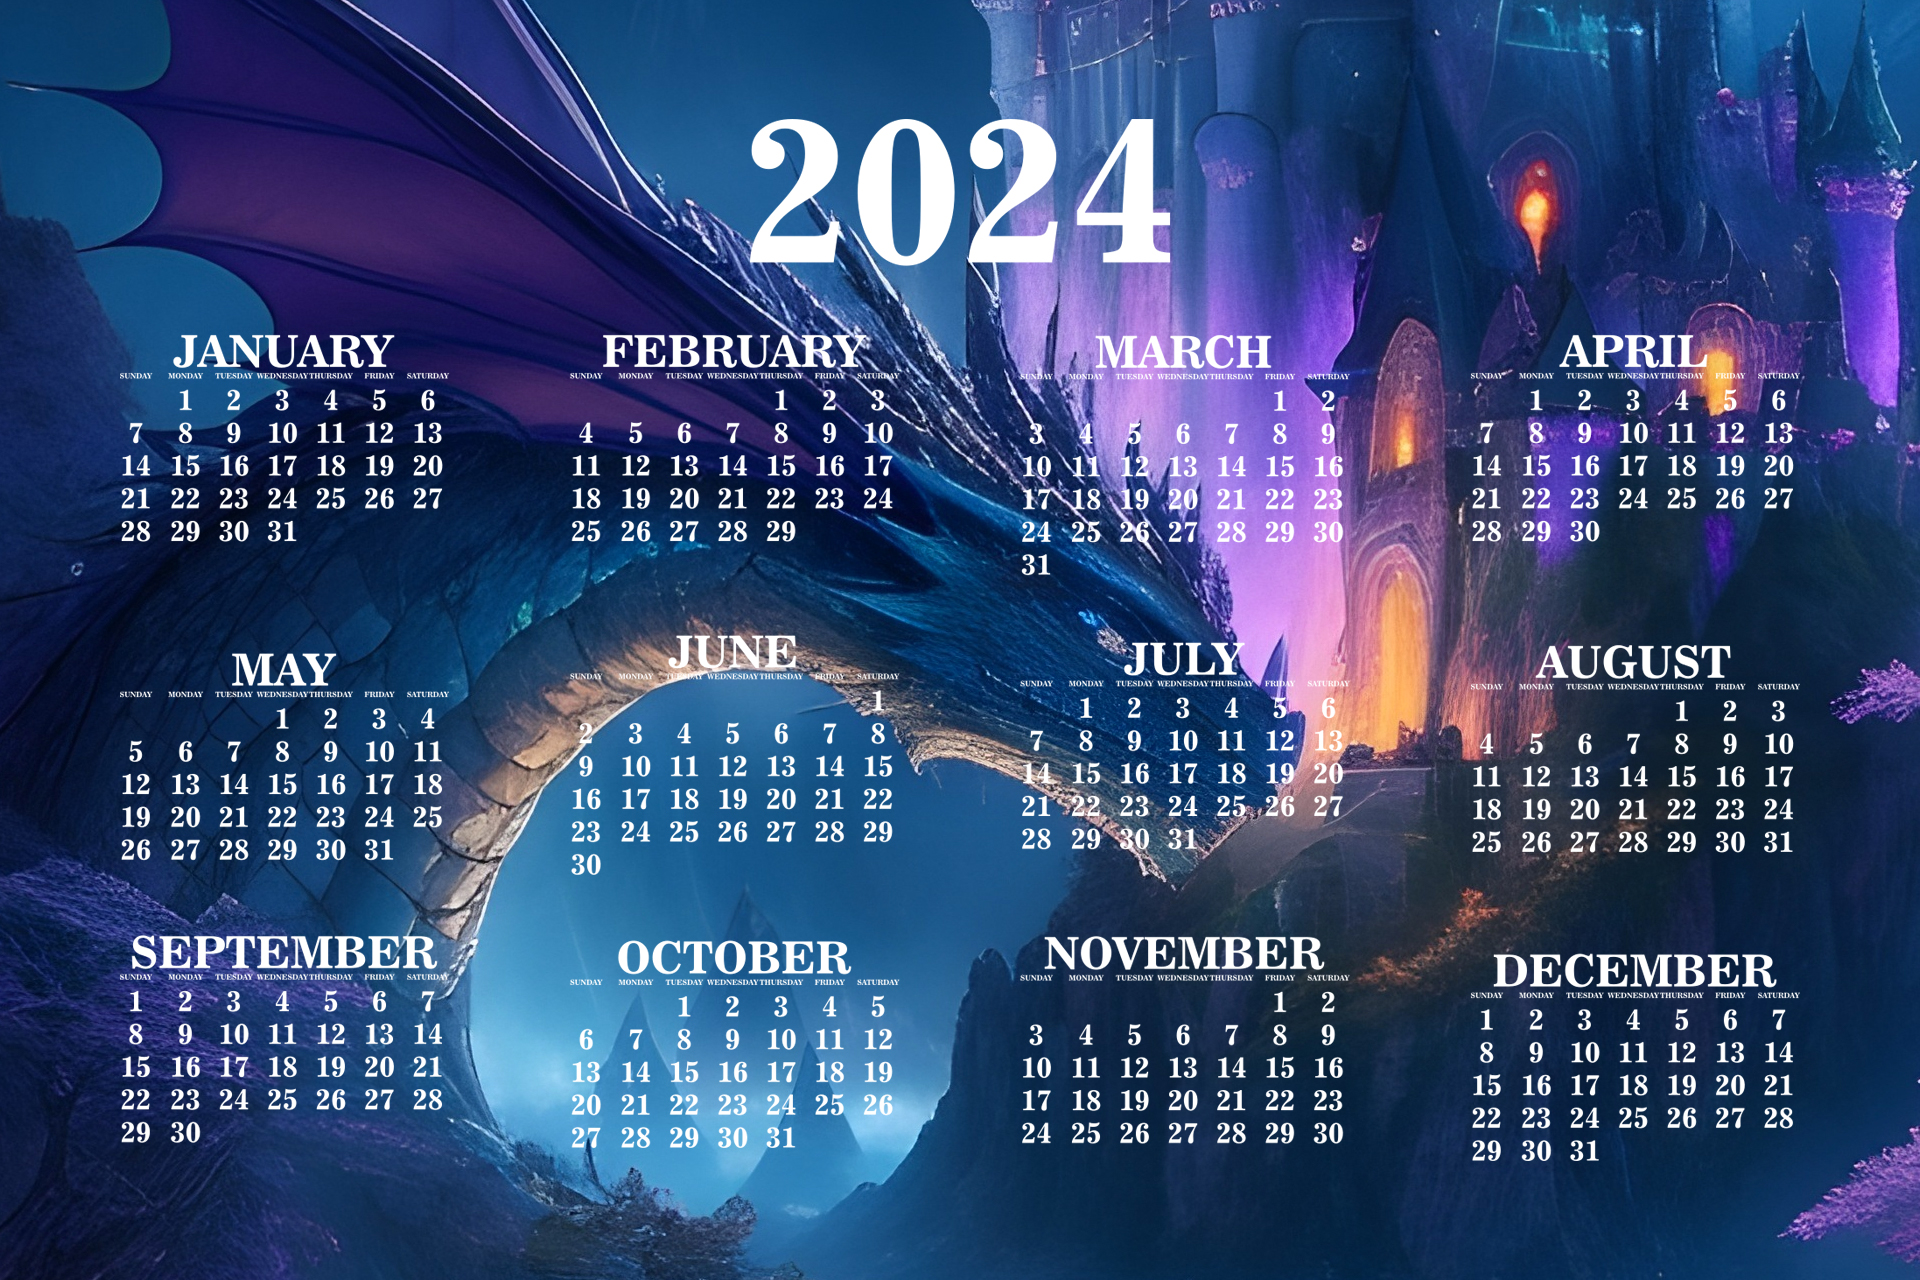 ¿Qué calendario o agenda puedo reutilizar en 2024? Lo quiero tener